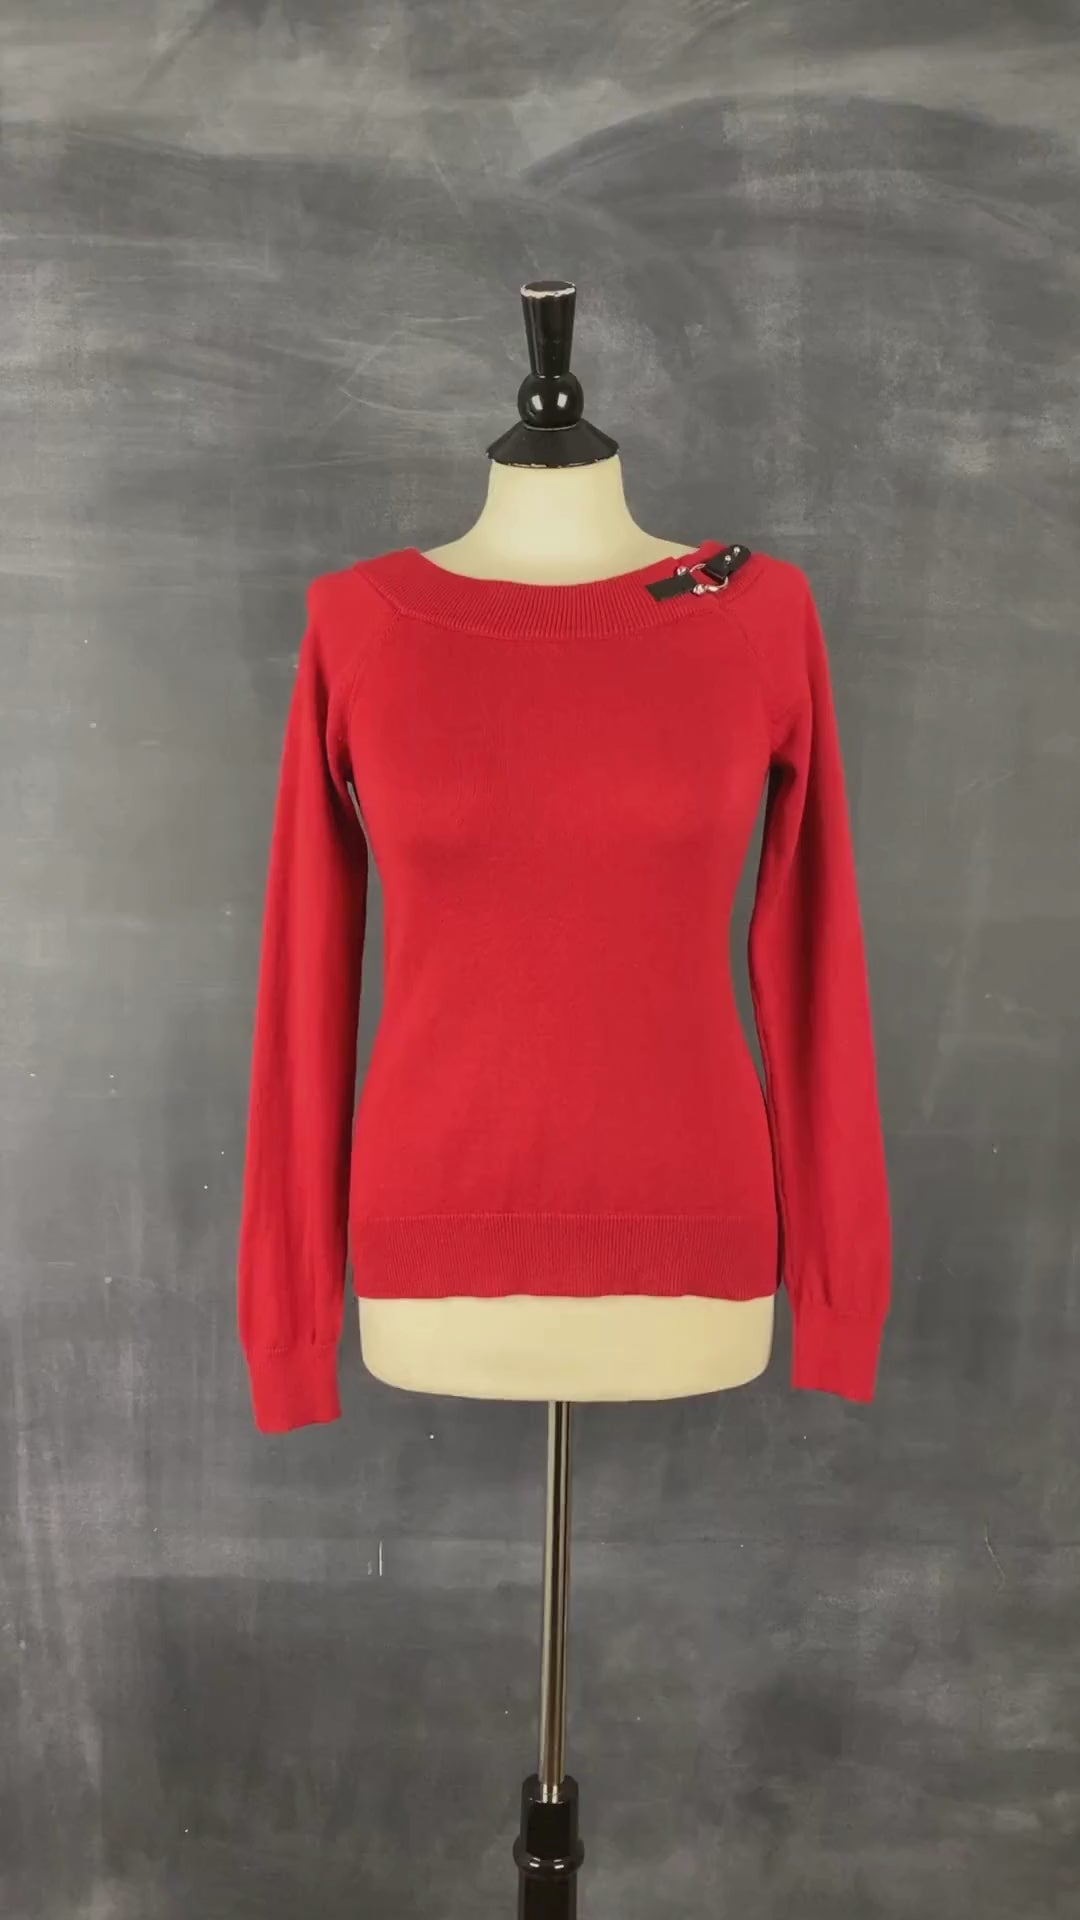 Chandail en tricot rouge col bateau Lauren Ralph Lauren, taille small. Vue de la vidéo qui présente tous les détails du chandail.